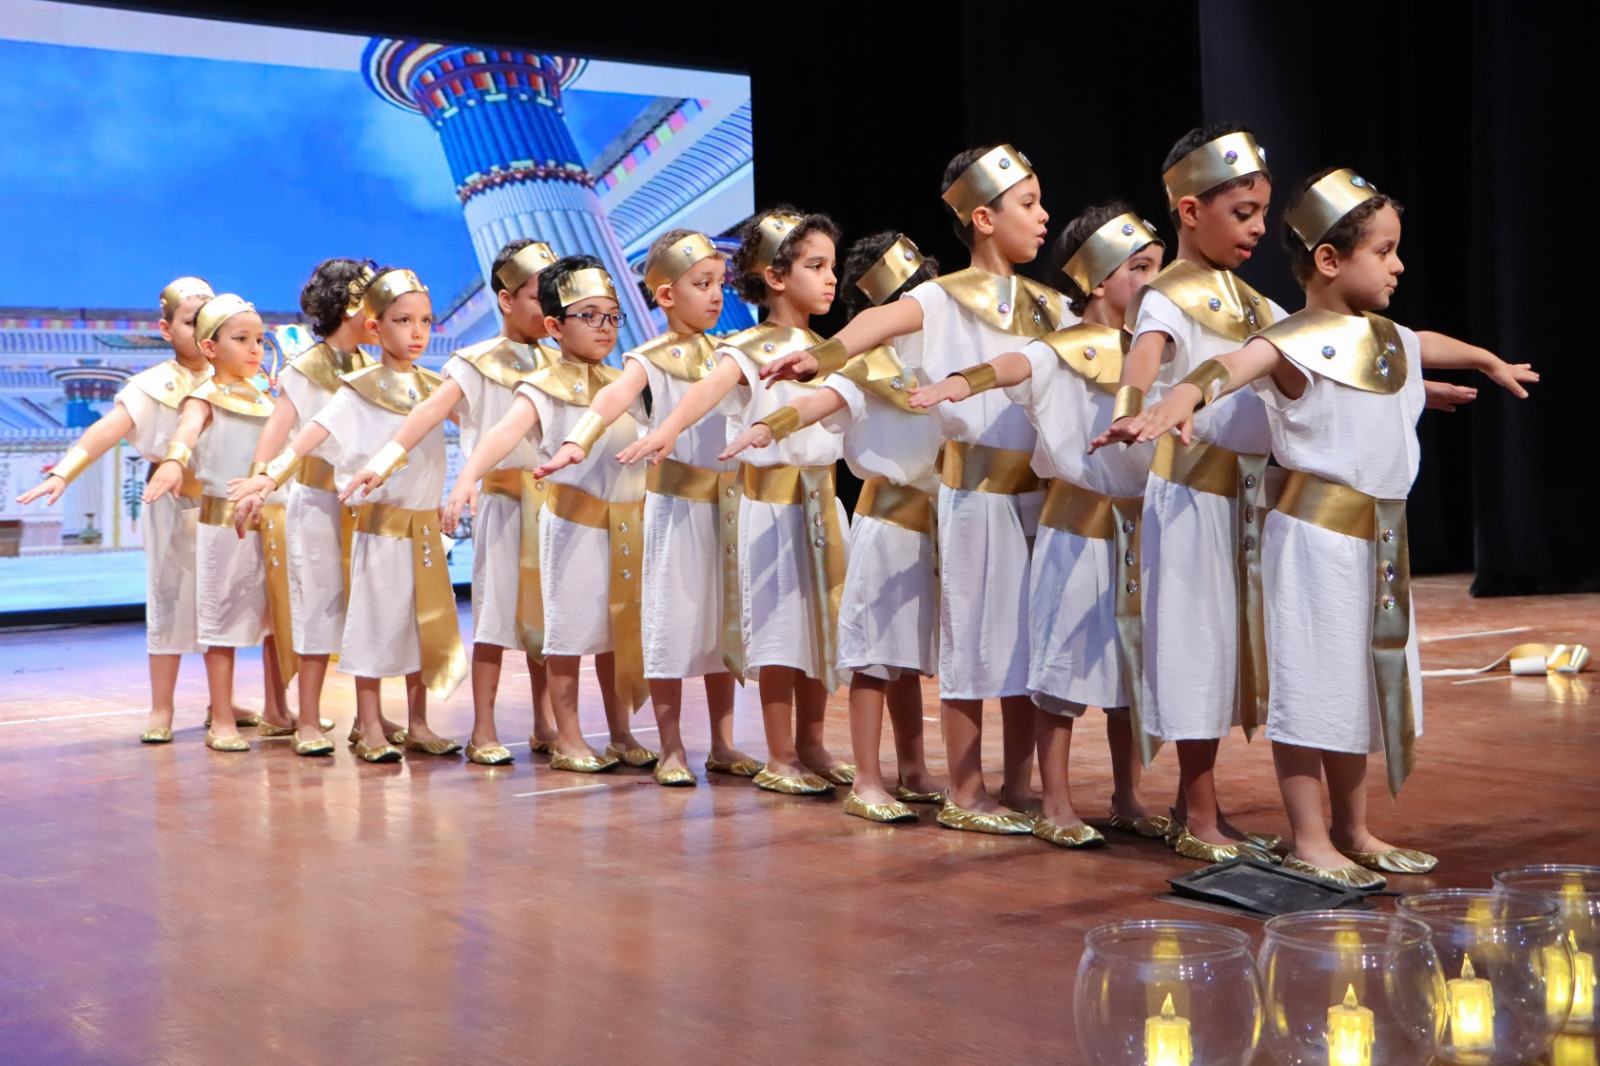 مسرح الحضارة المصرية يحتضن حفل تخرج طلاب مدرسة كونتيننتال بالاس (4)